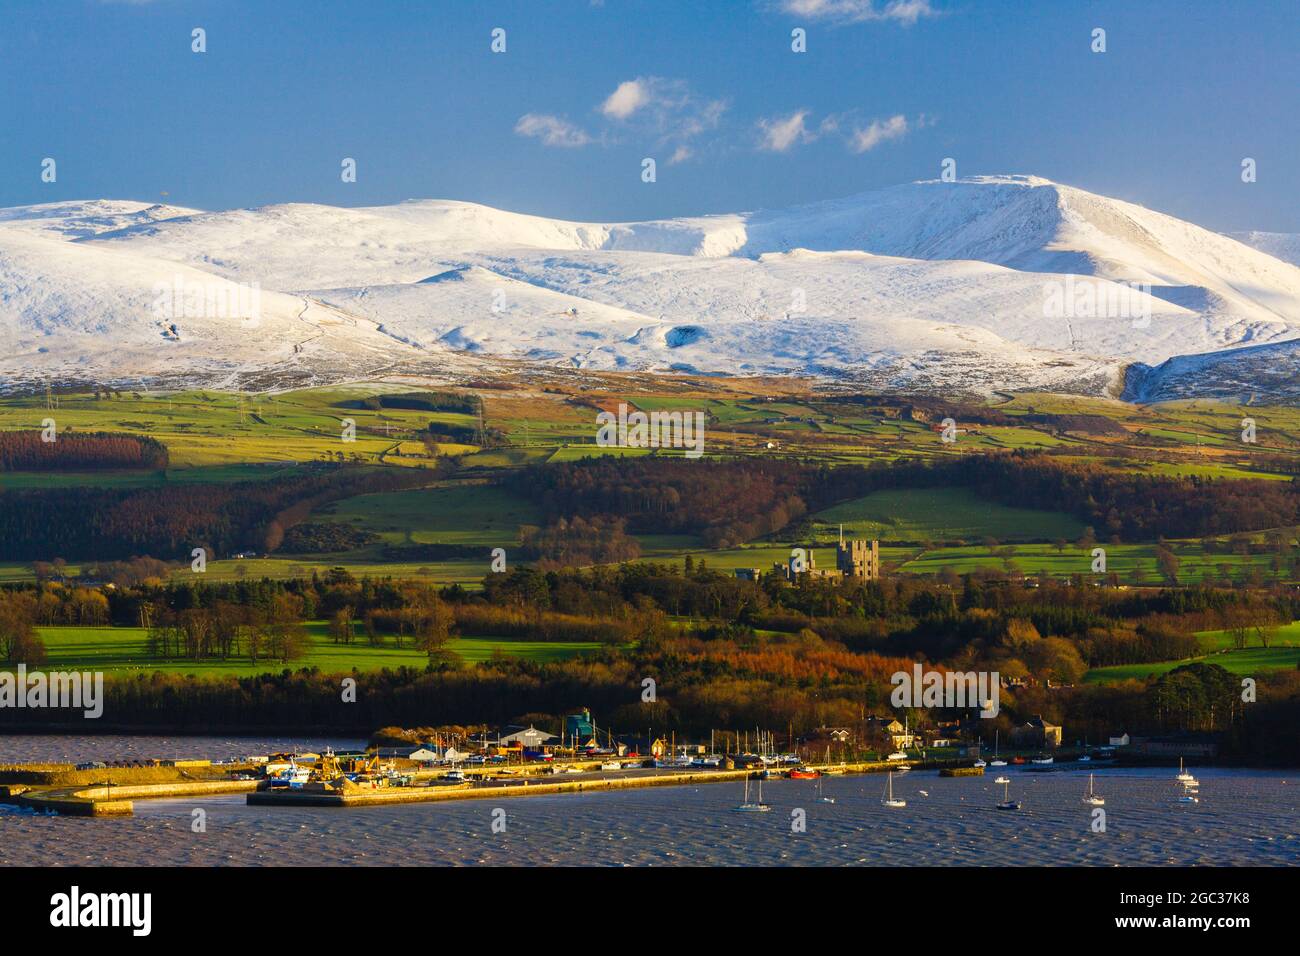 Port de Bangor et château de Penrhyn de l'autre côté du détroit de Menai avec de la neige sur les montagnes de Snowdonia au-delà en hiver vu depuis le pont de Menai Gwynedd pays de Galles Royaume-Uni Banque D'Images